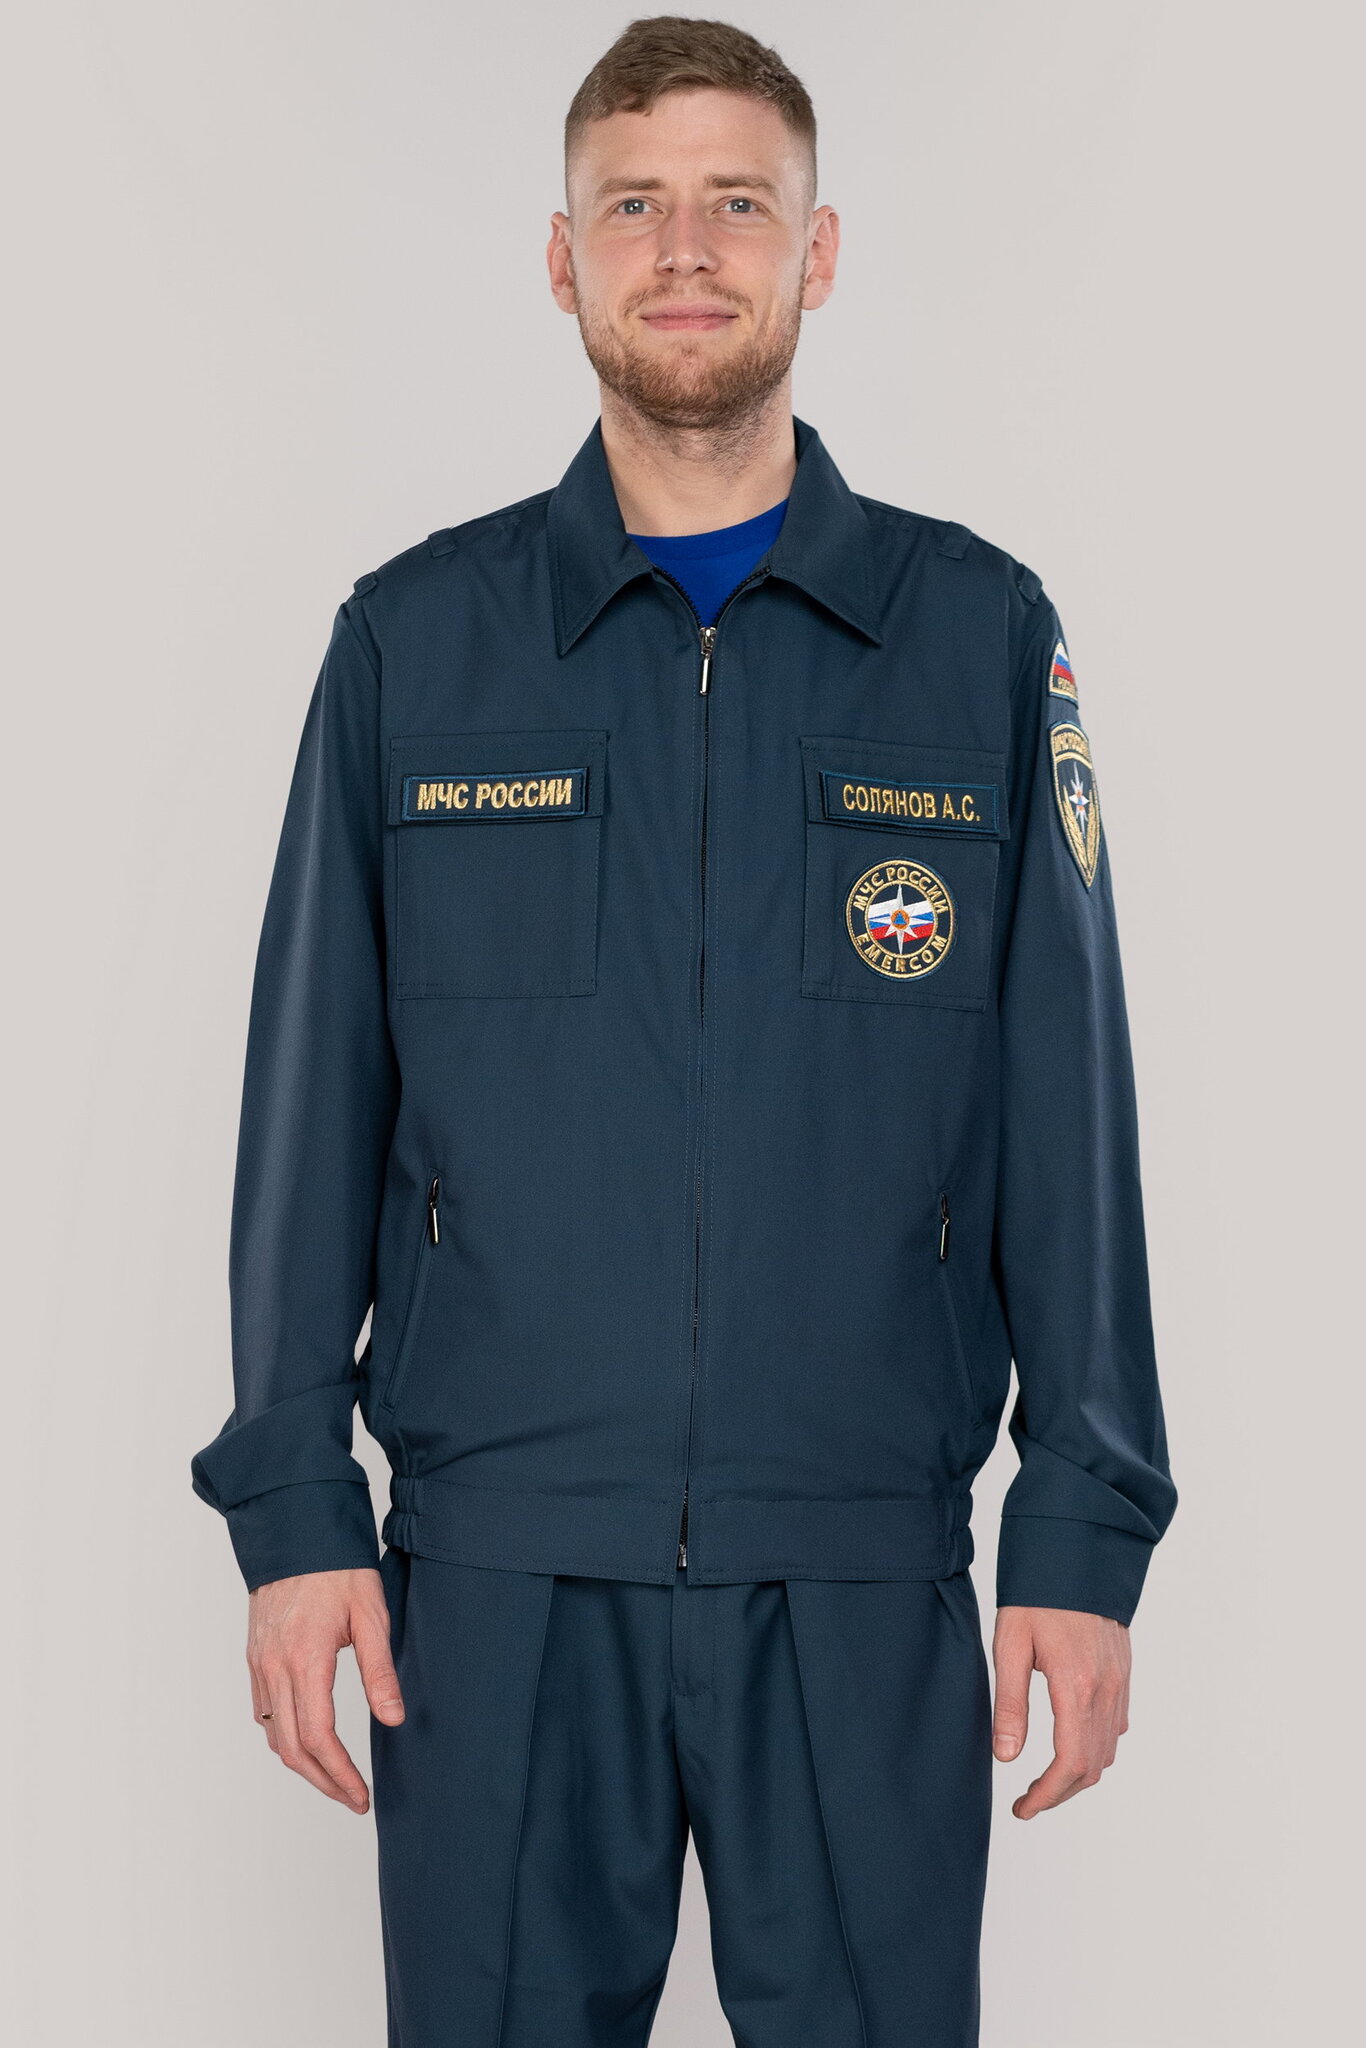 Новые образцы формы одежды и экипировки пожарных ФПС ГПС